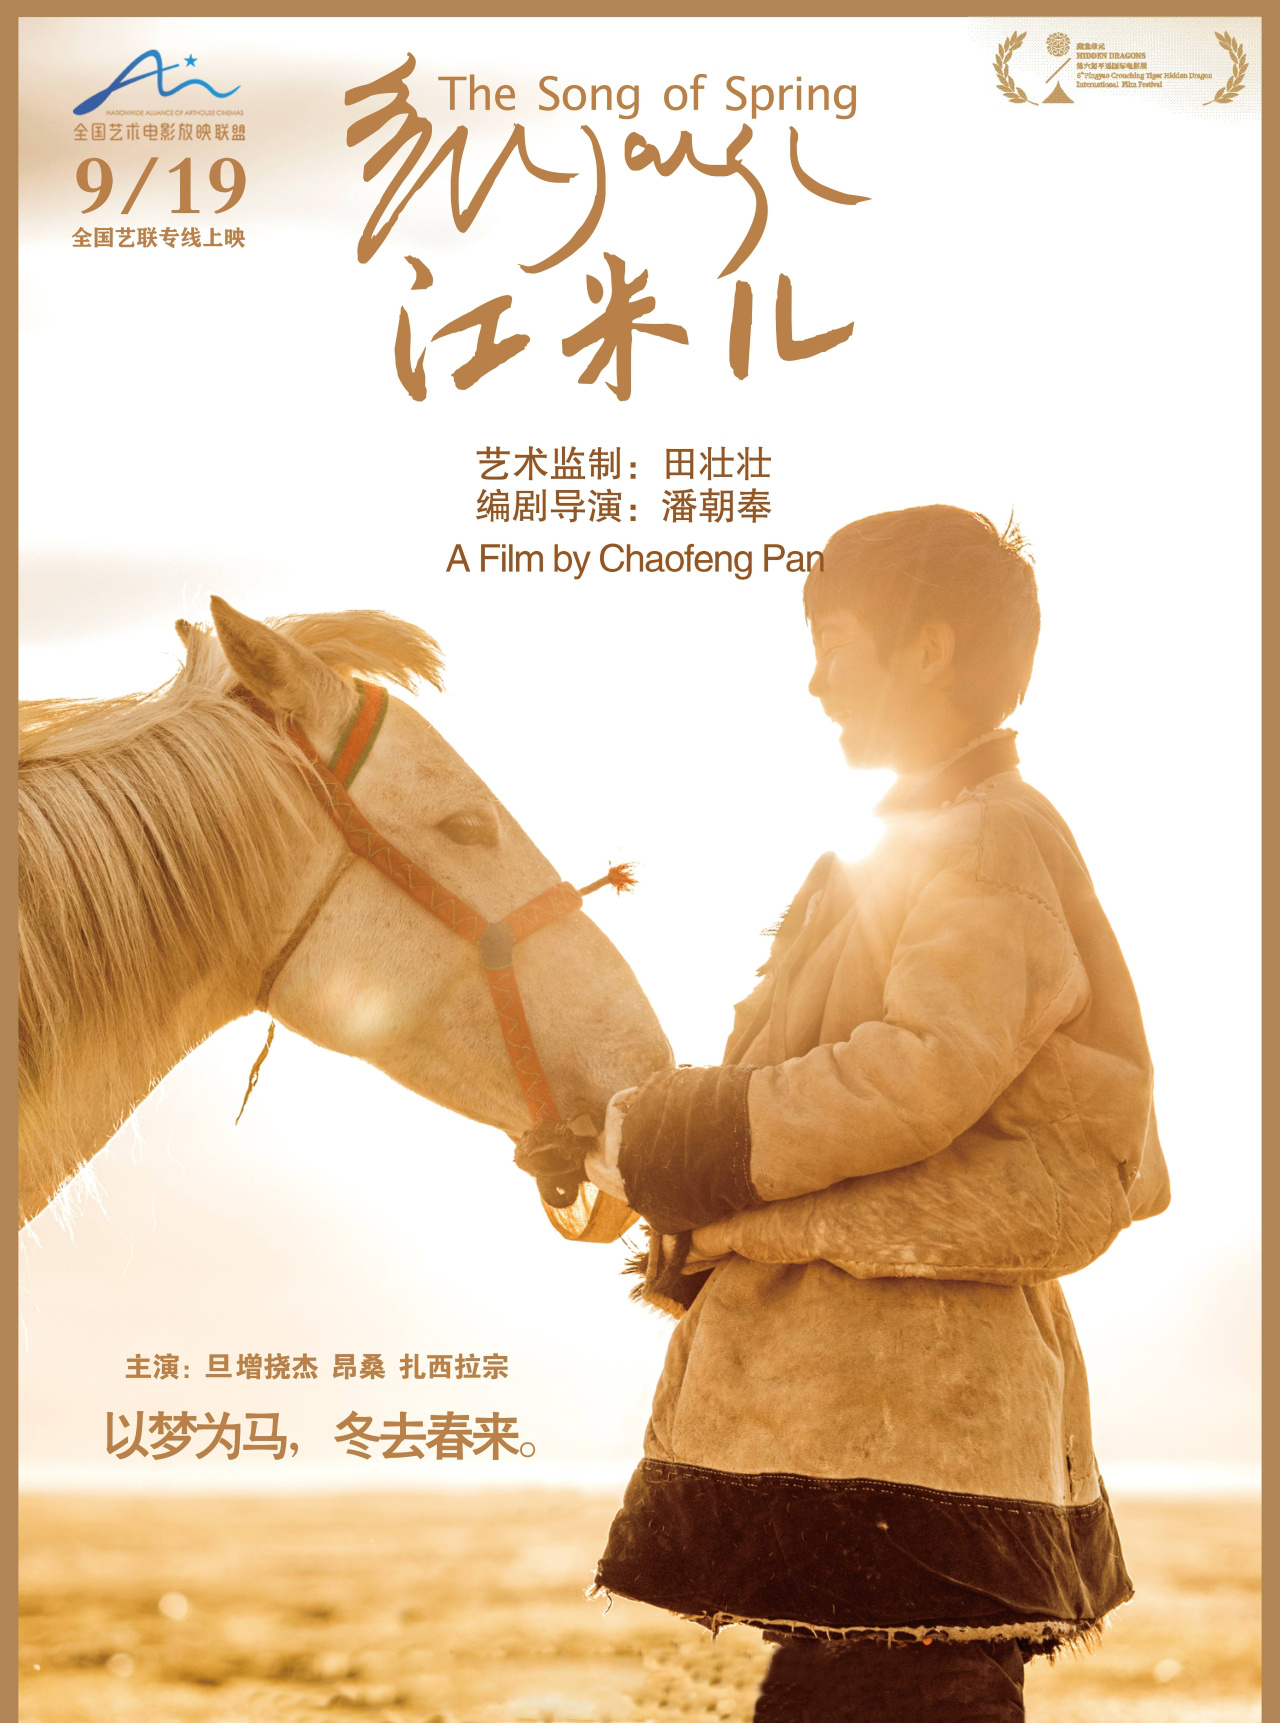 田壮壮监制《江米儿》上映 感受马背上的少年梦